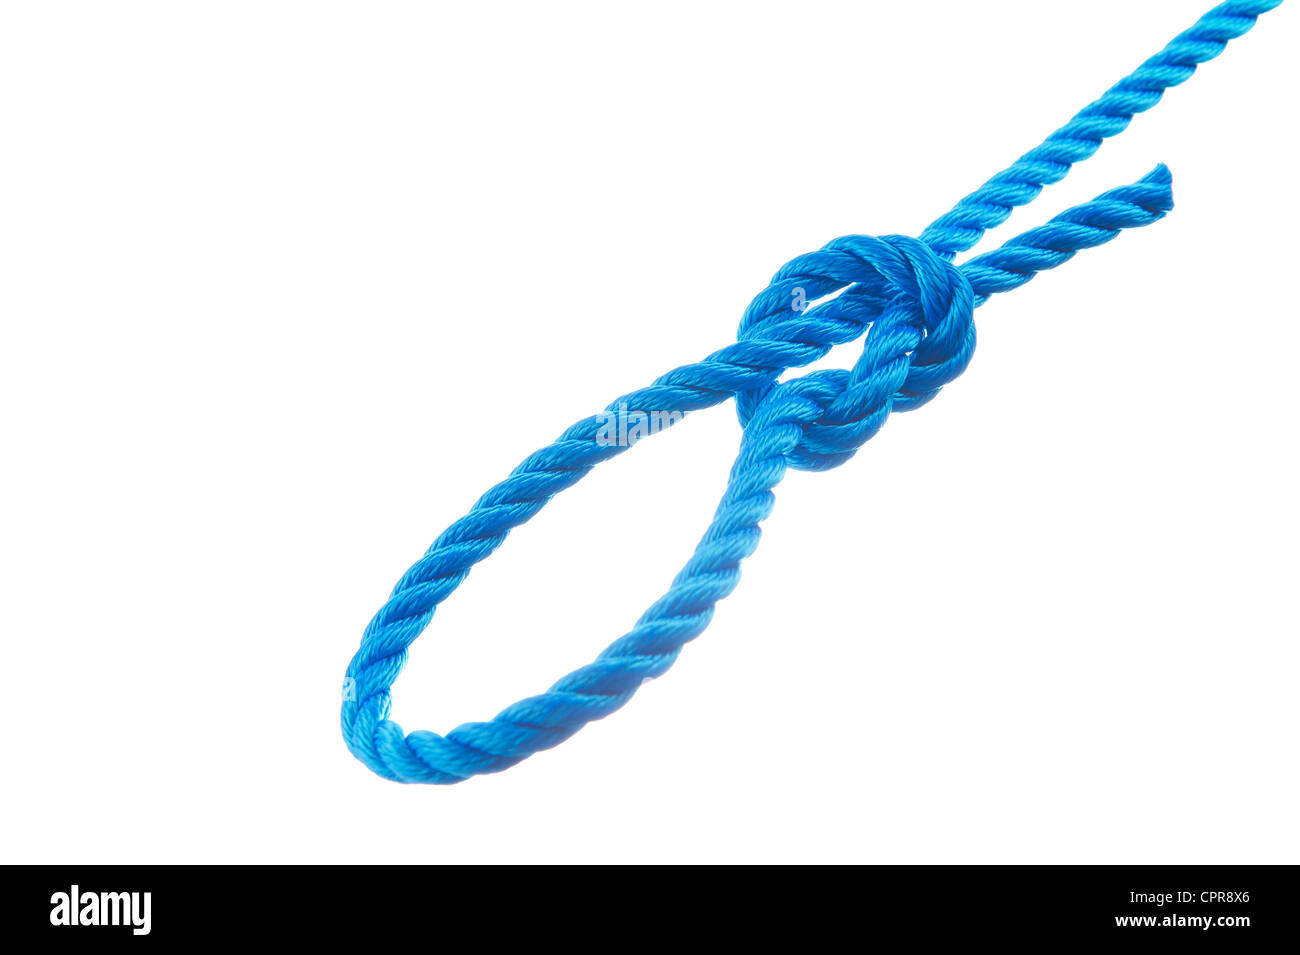 Slip knot isolated on white background Stock Photo